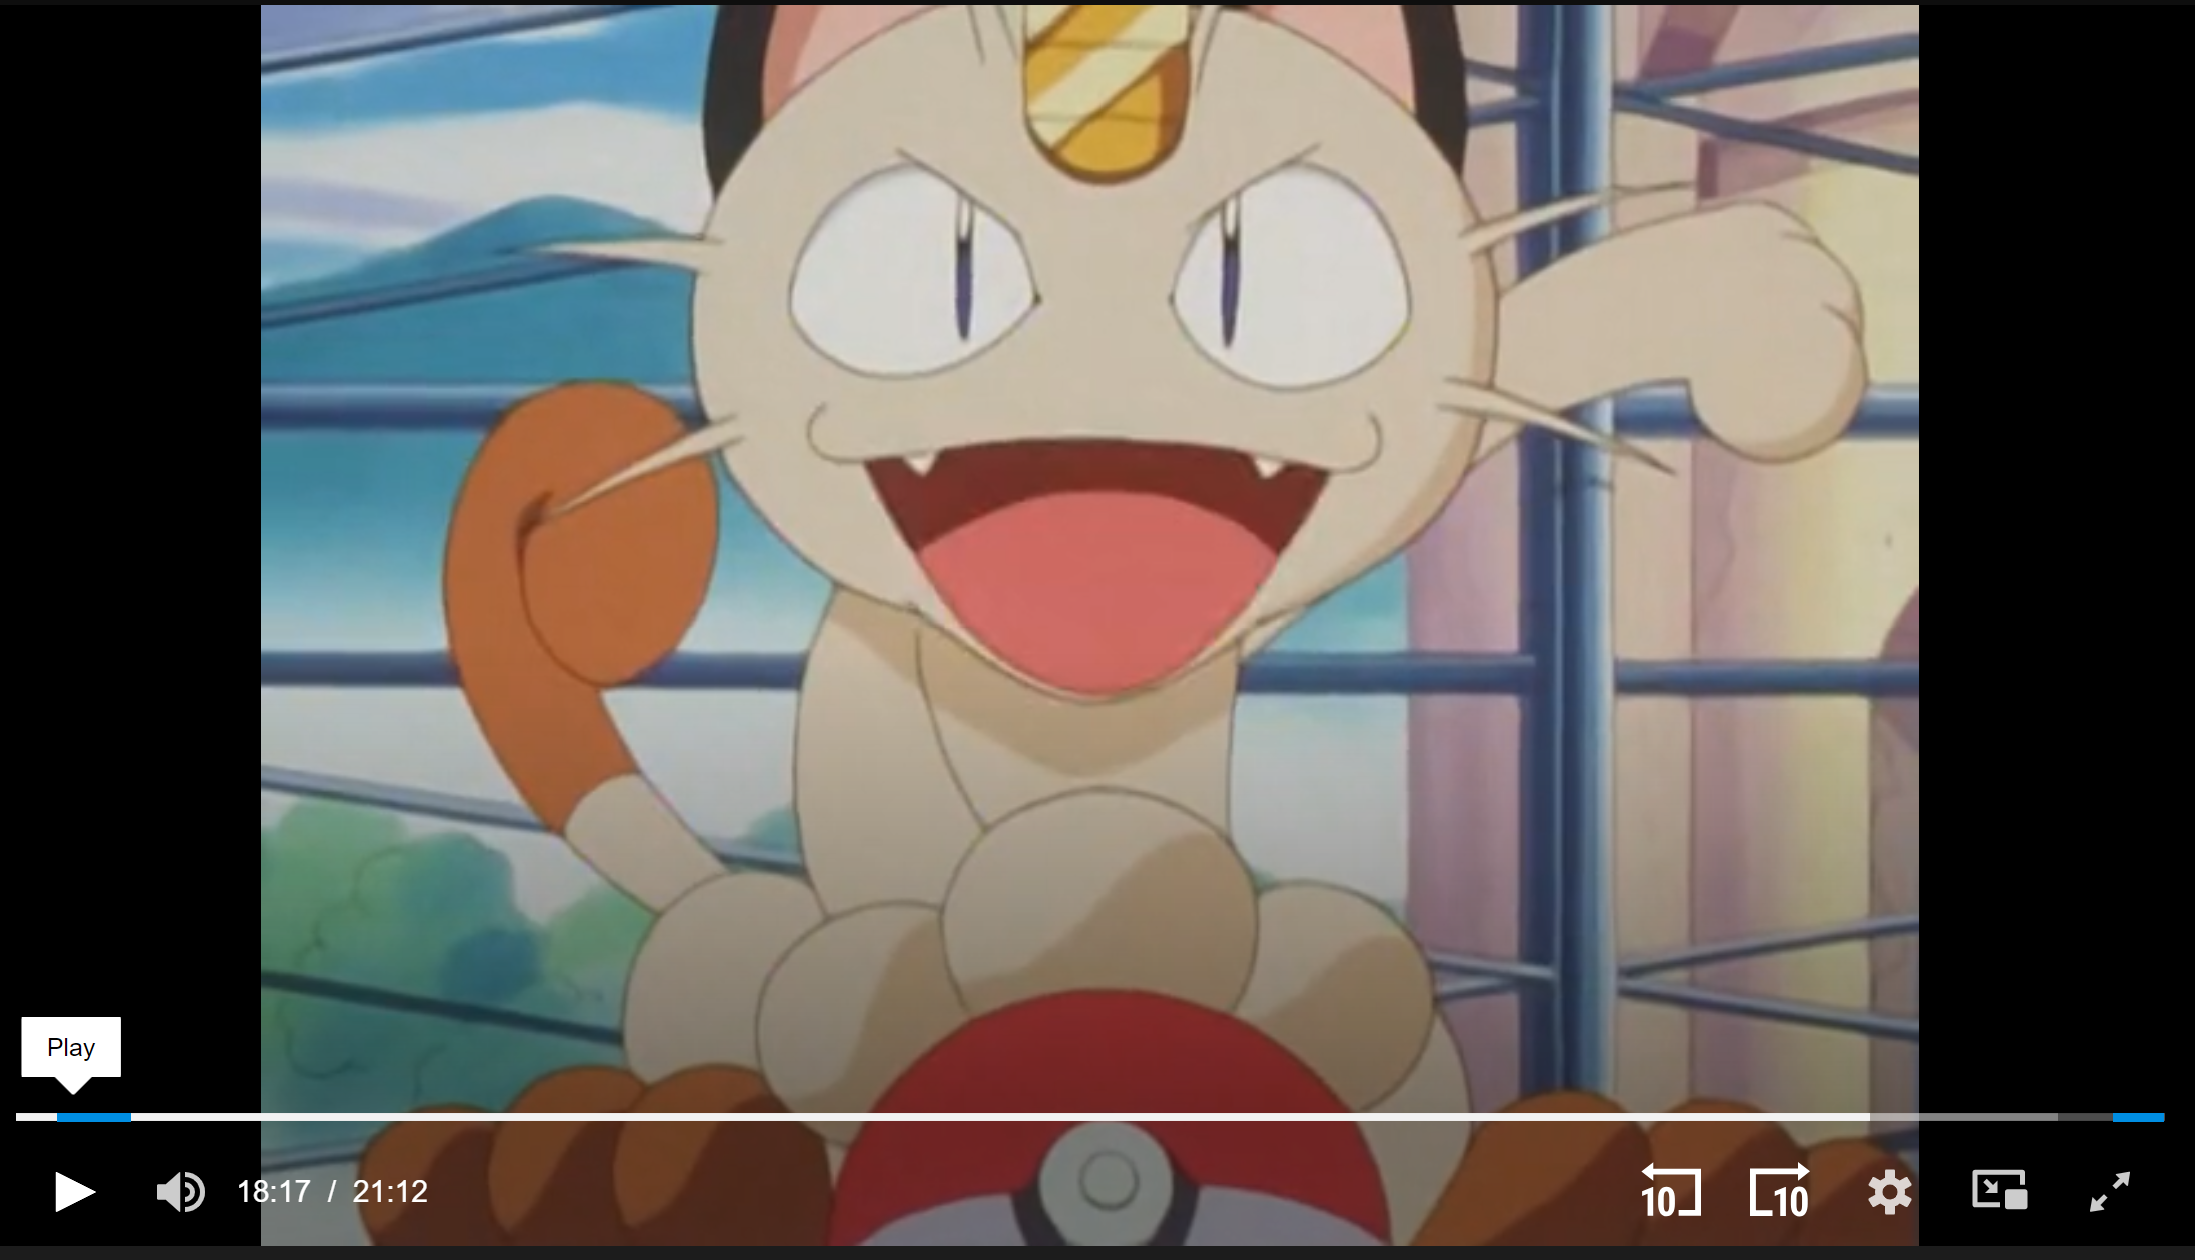 Meowth JoJo Posing, Pokémon